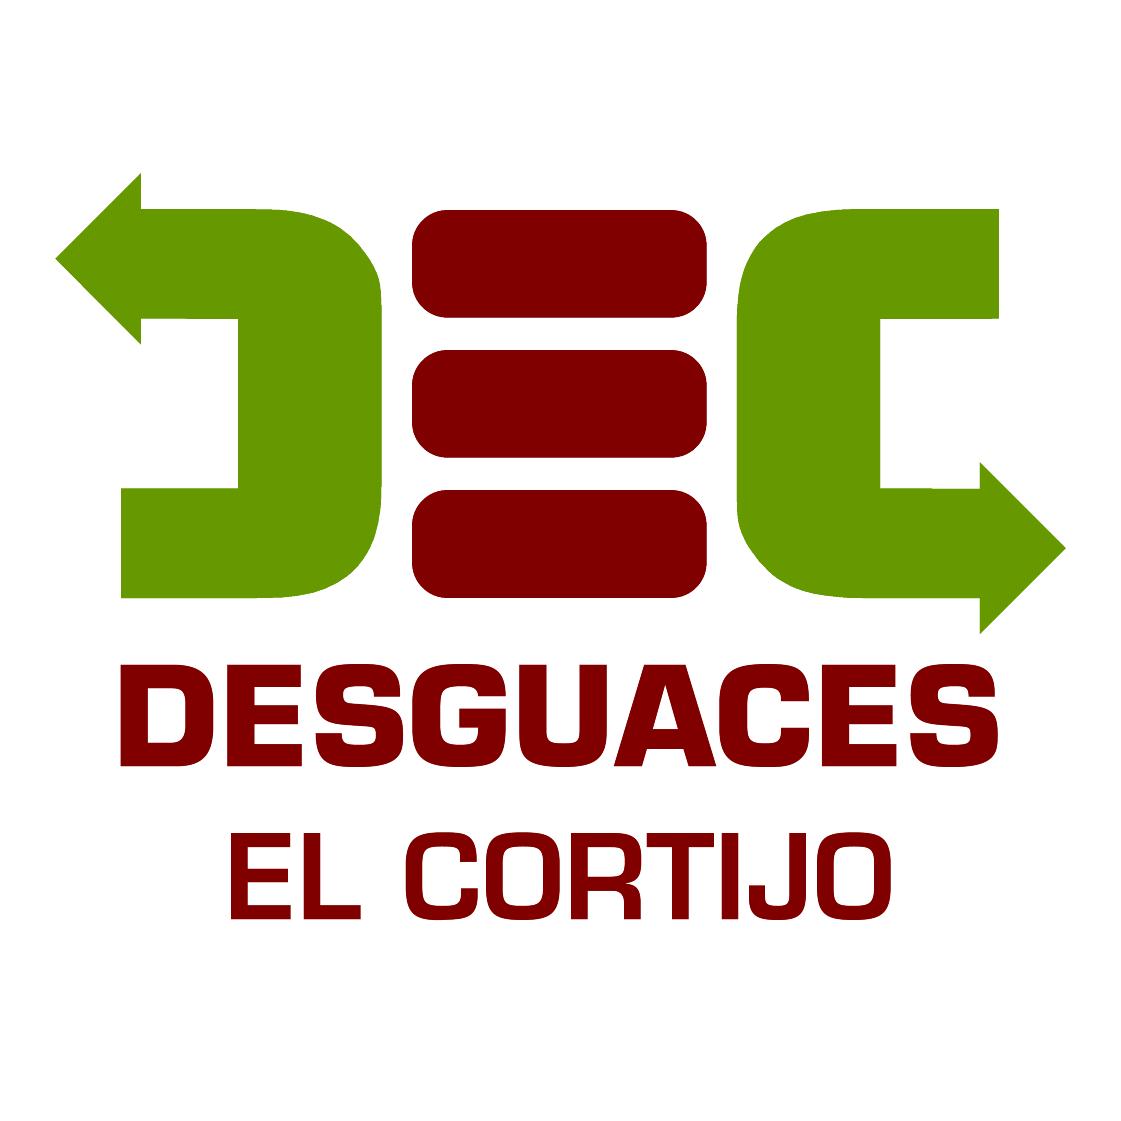 Desguaces El Cortijo Logo